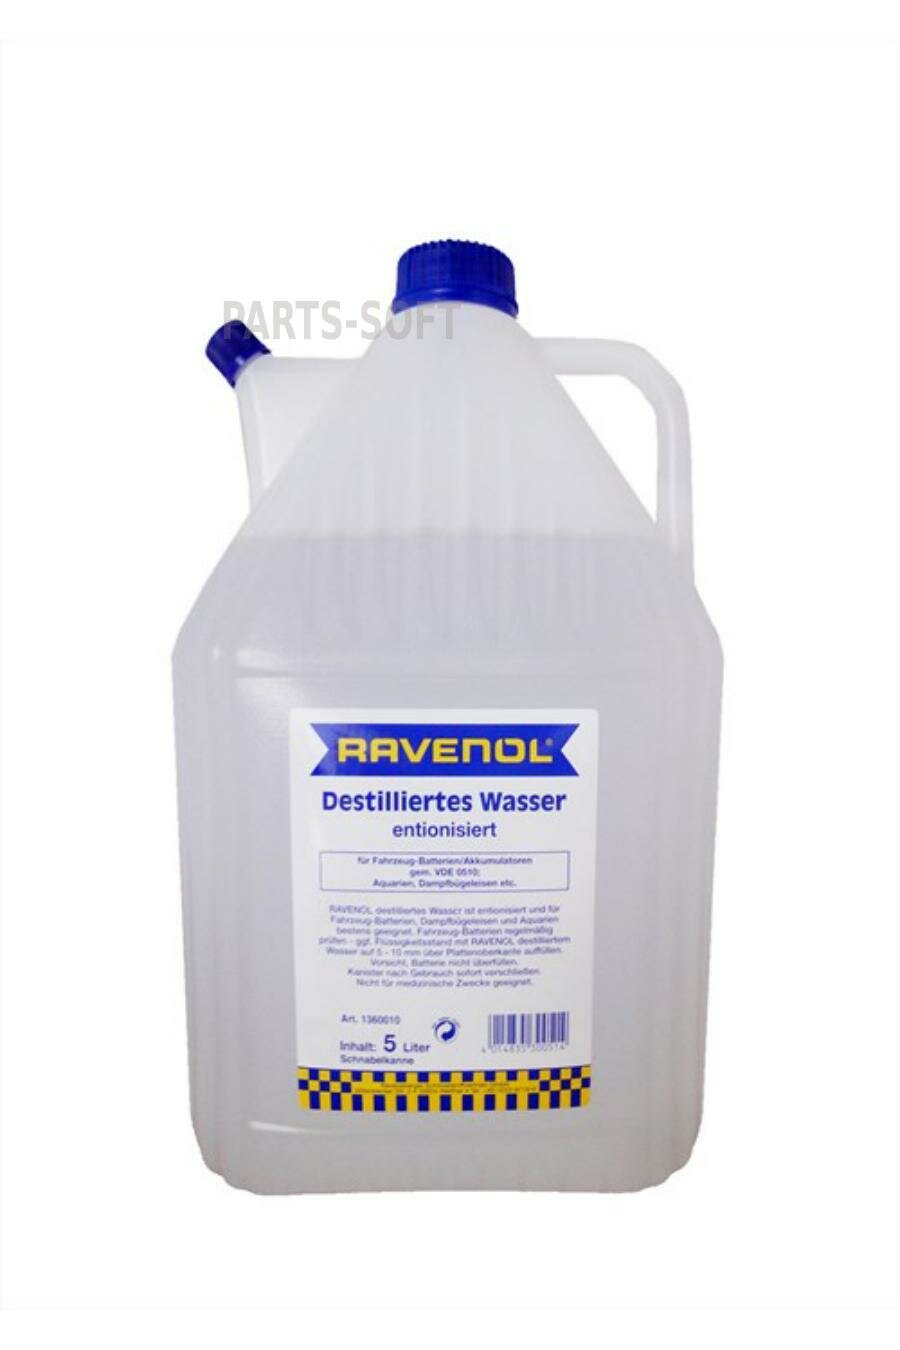 RAVENOL 4014835300514 Дистиллированная вода RAVENOL destilliertes Wasser (5л) спец. канистра